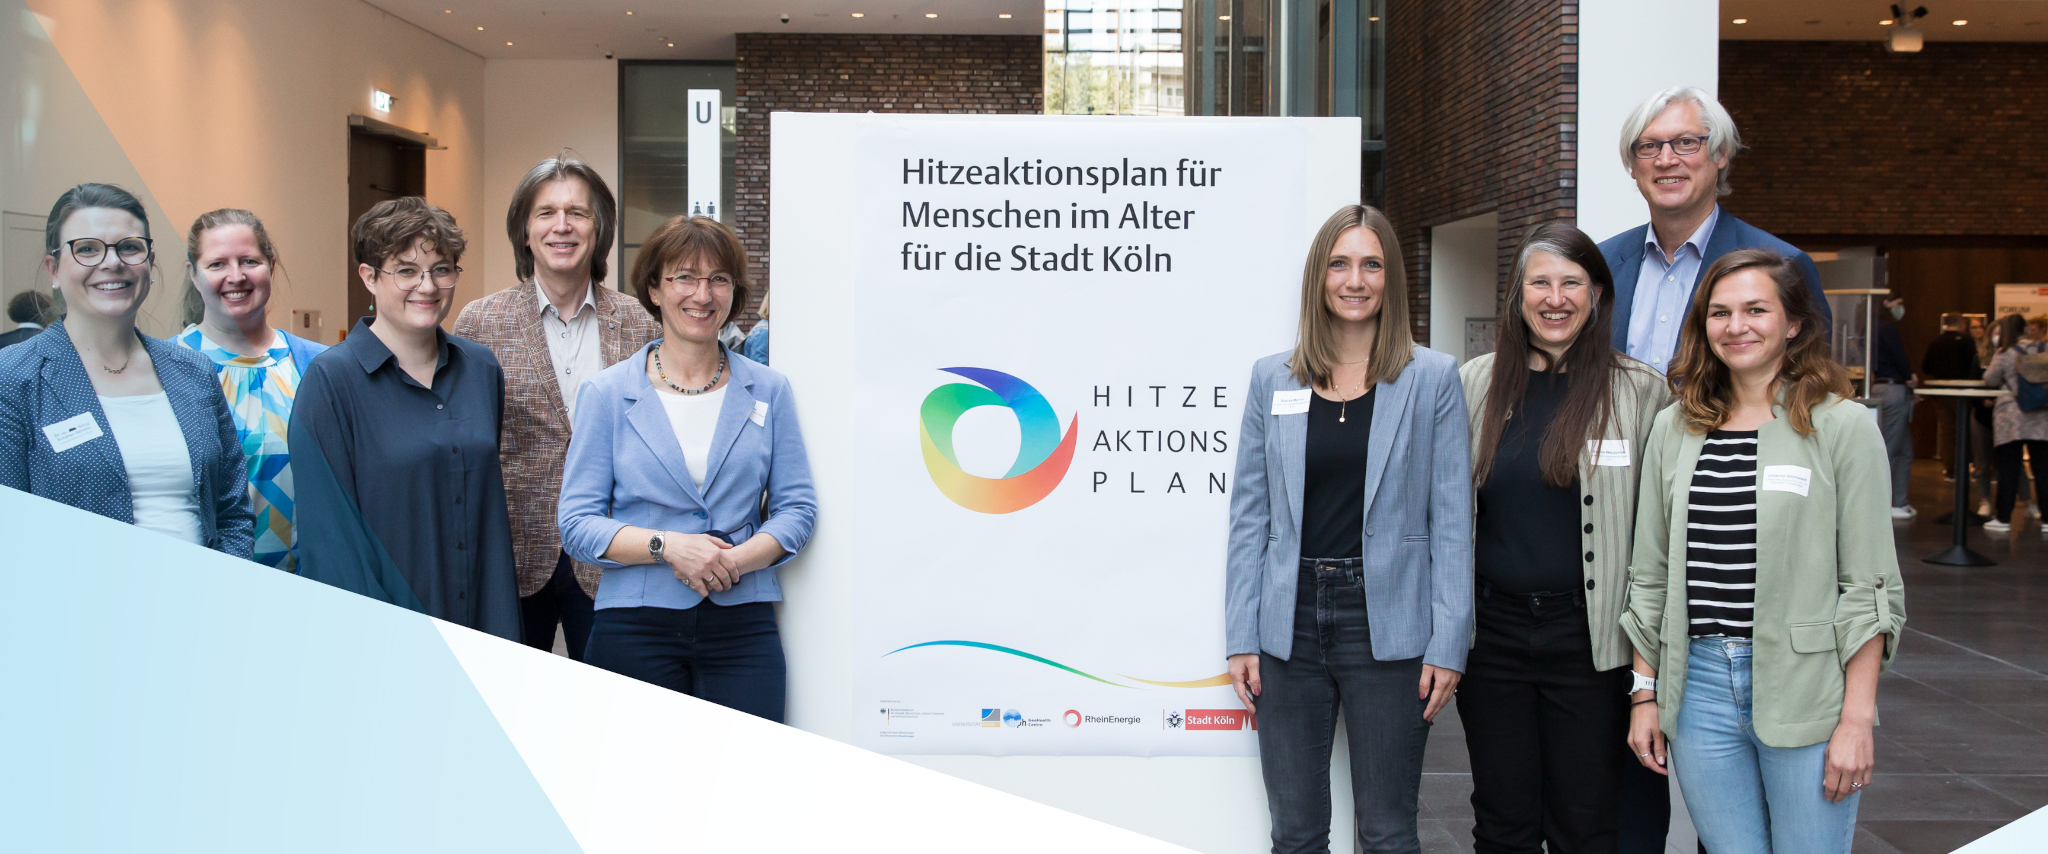 Hitzeaktionsplan für Menschen im Alter für die Stadt Köln für „Blauer Kompass“ nominiert